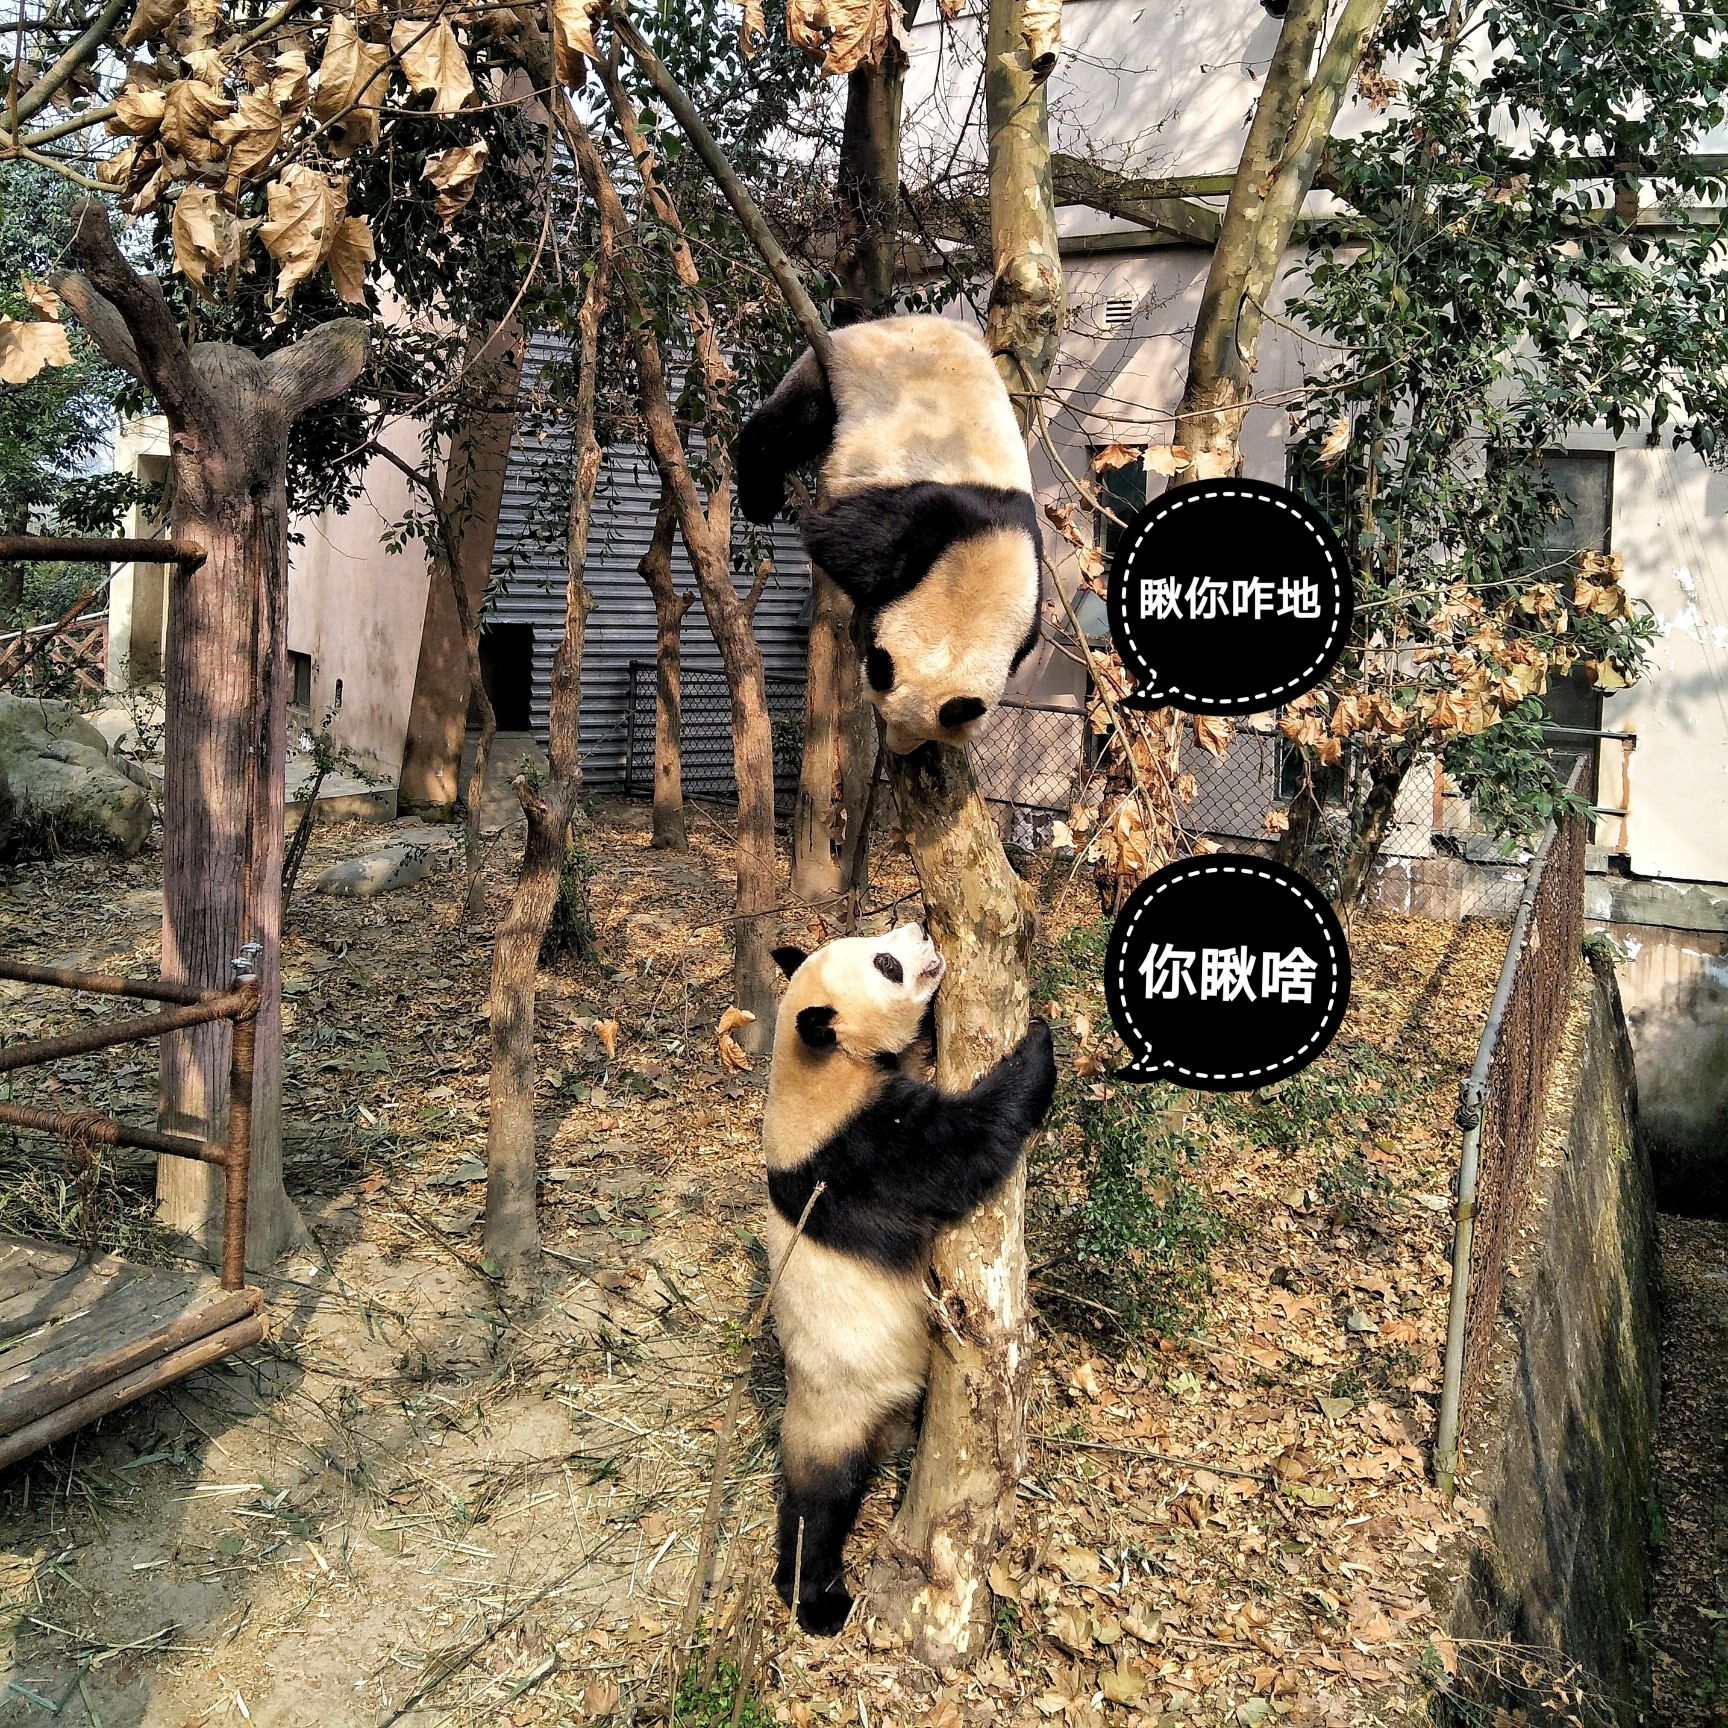 萌宠成长记/熊猫的100个最萌瞬间/熊猫好可爱 大熊猫🐼： 属于食肉目、熊科、大熊猫亚科和大熊猫属唯